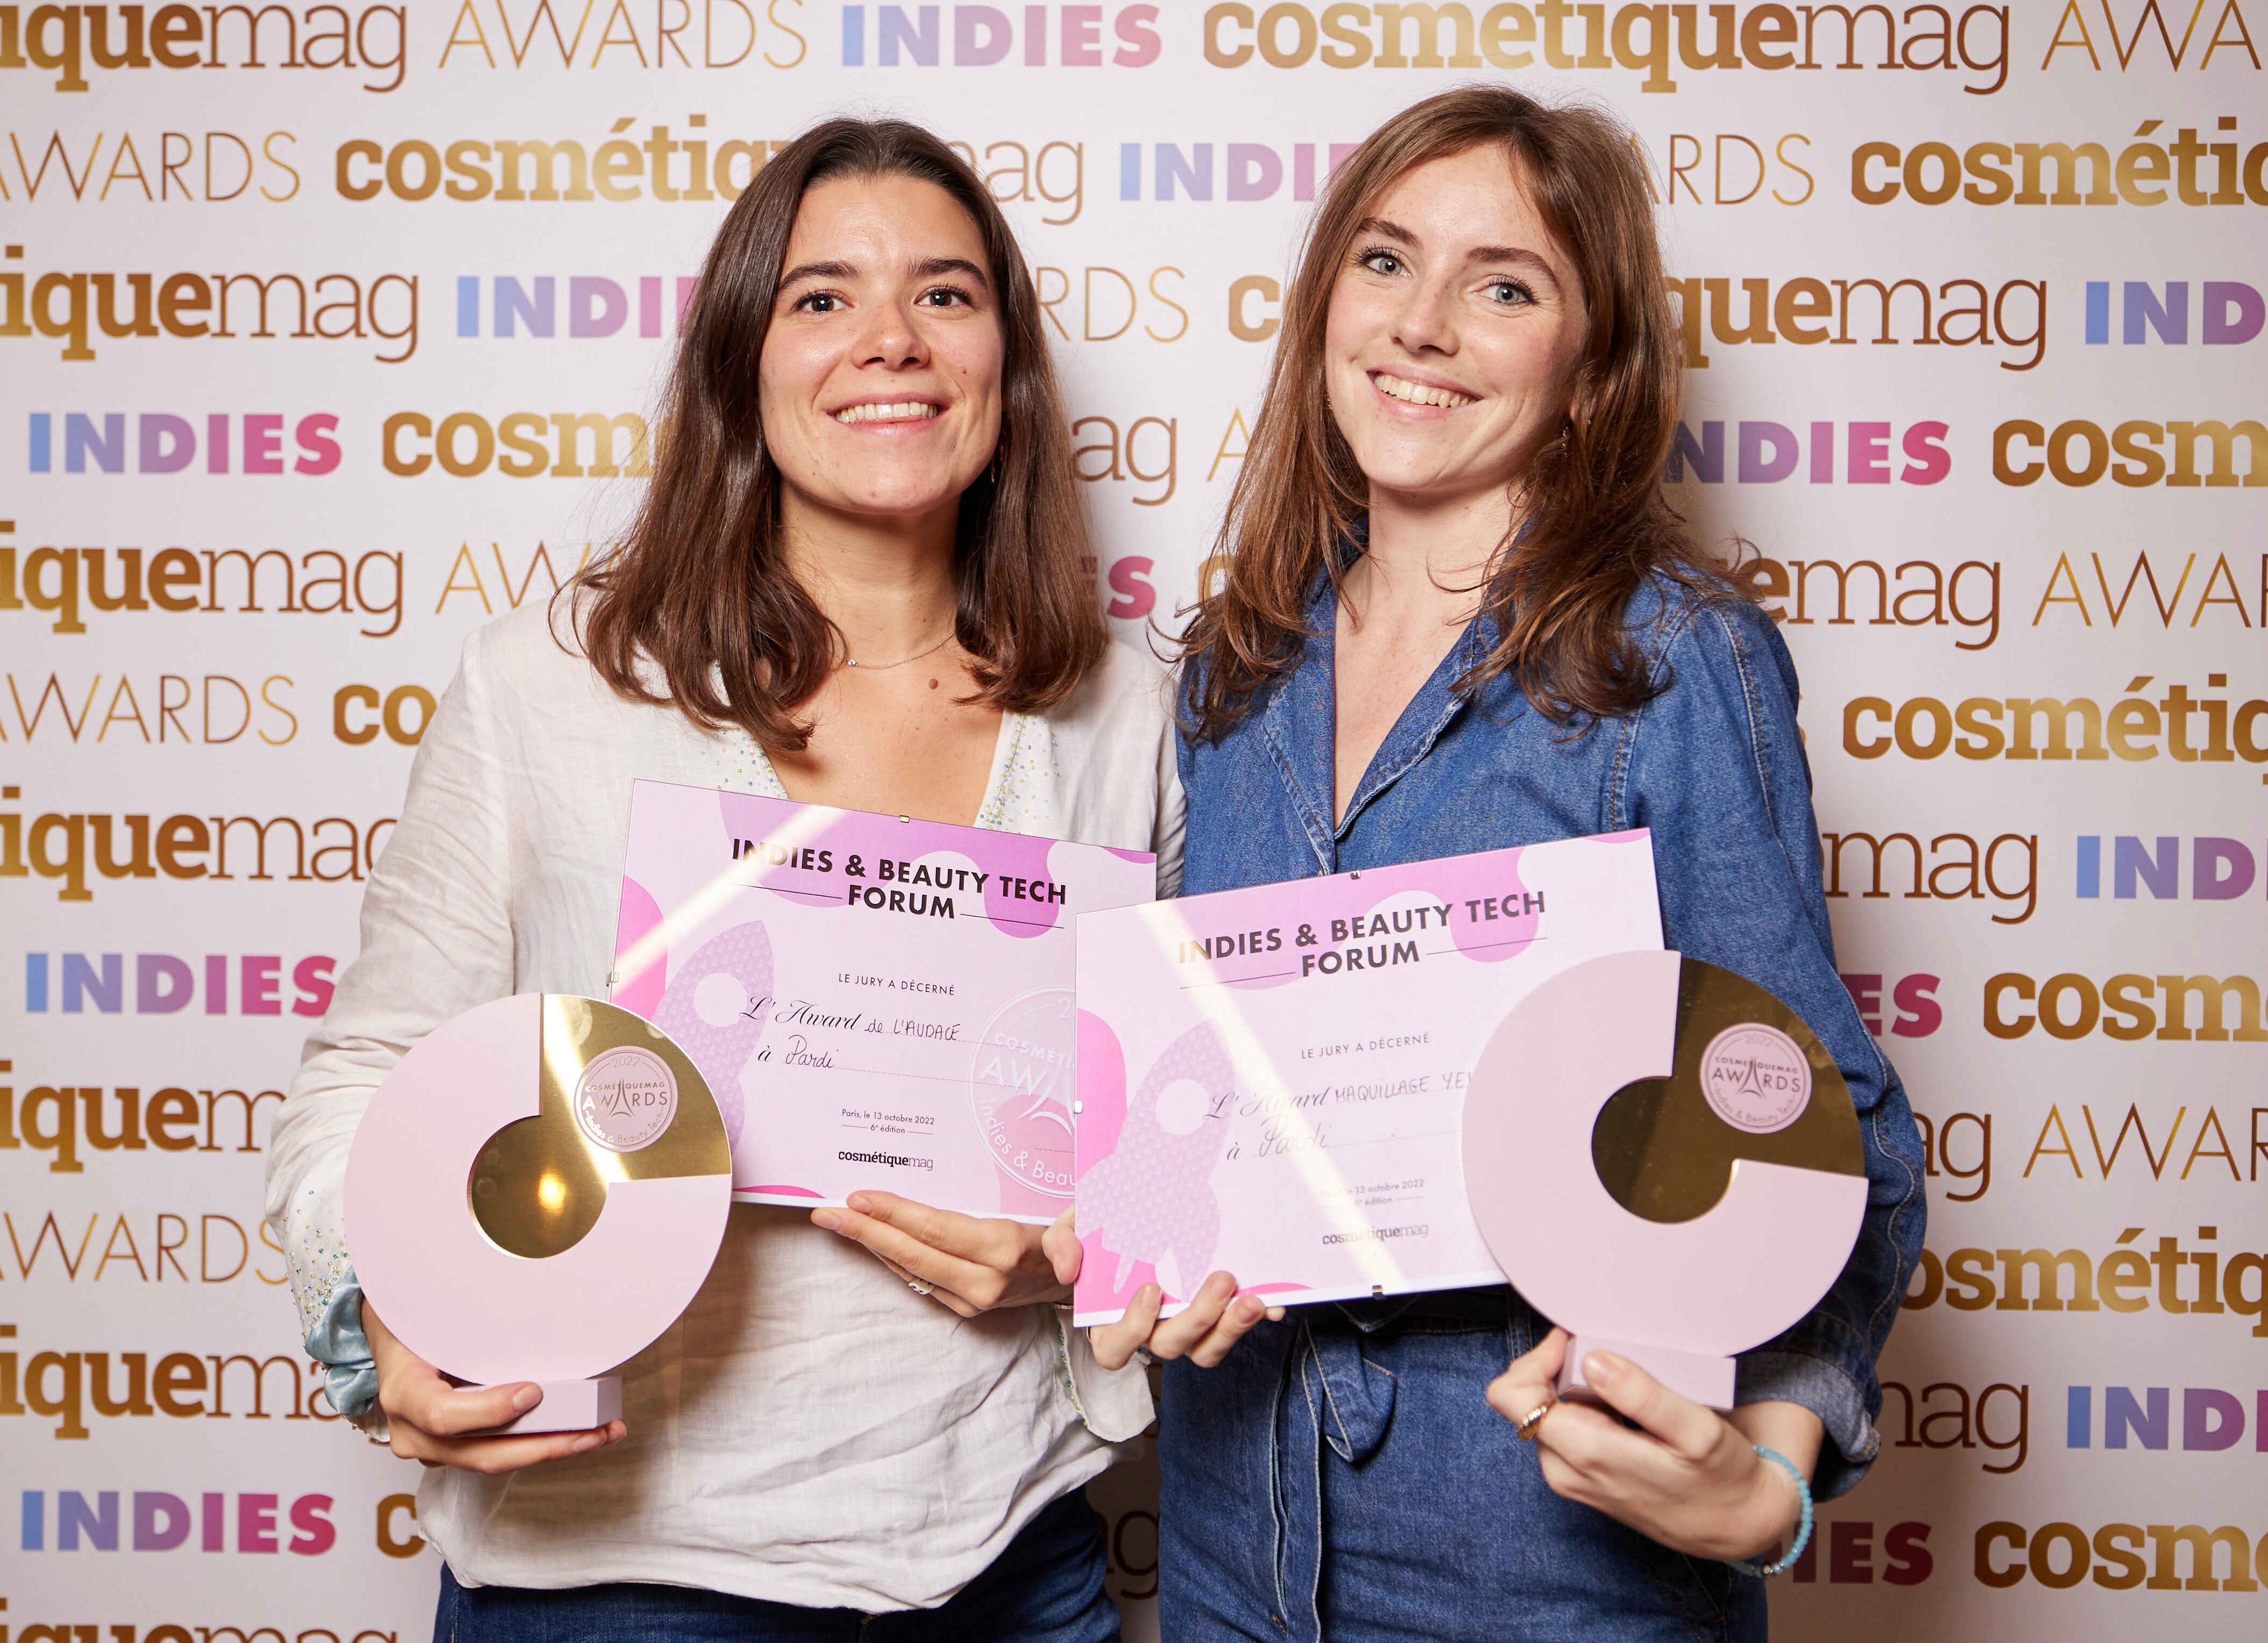 Léa et Julie de Pardi avec leurs prix d'argent et d'audace au forum indies du cosmetiquemag